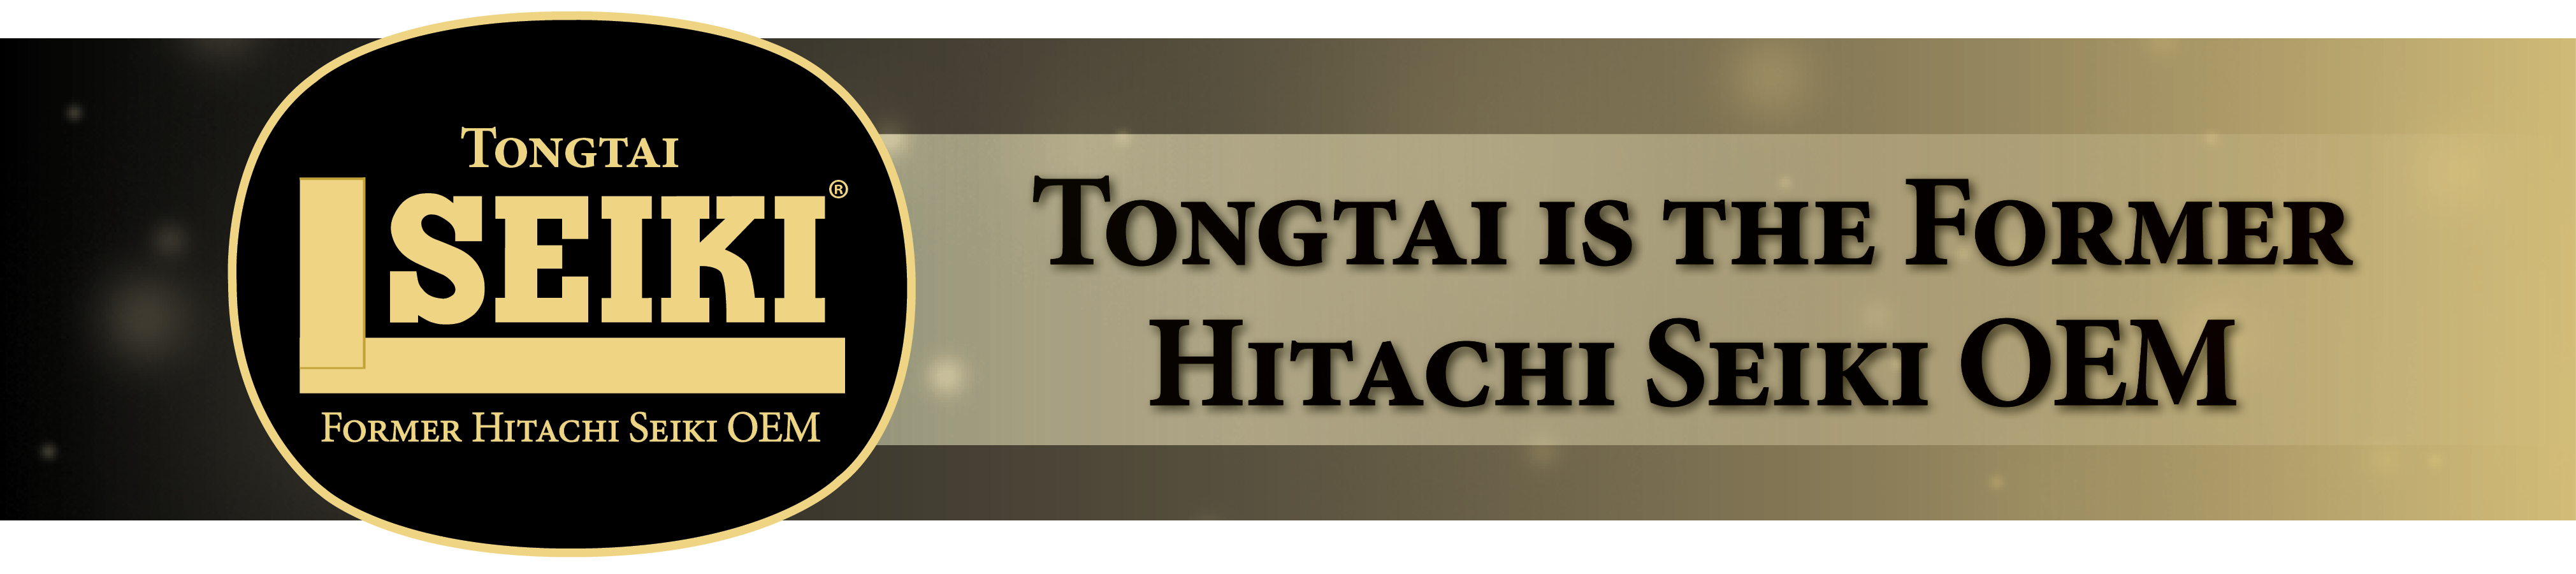 Tongtai is the former Hitachi Seiki OEM